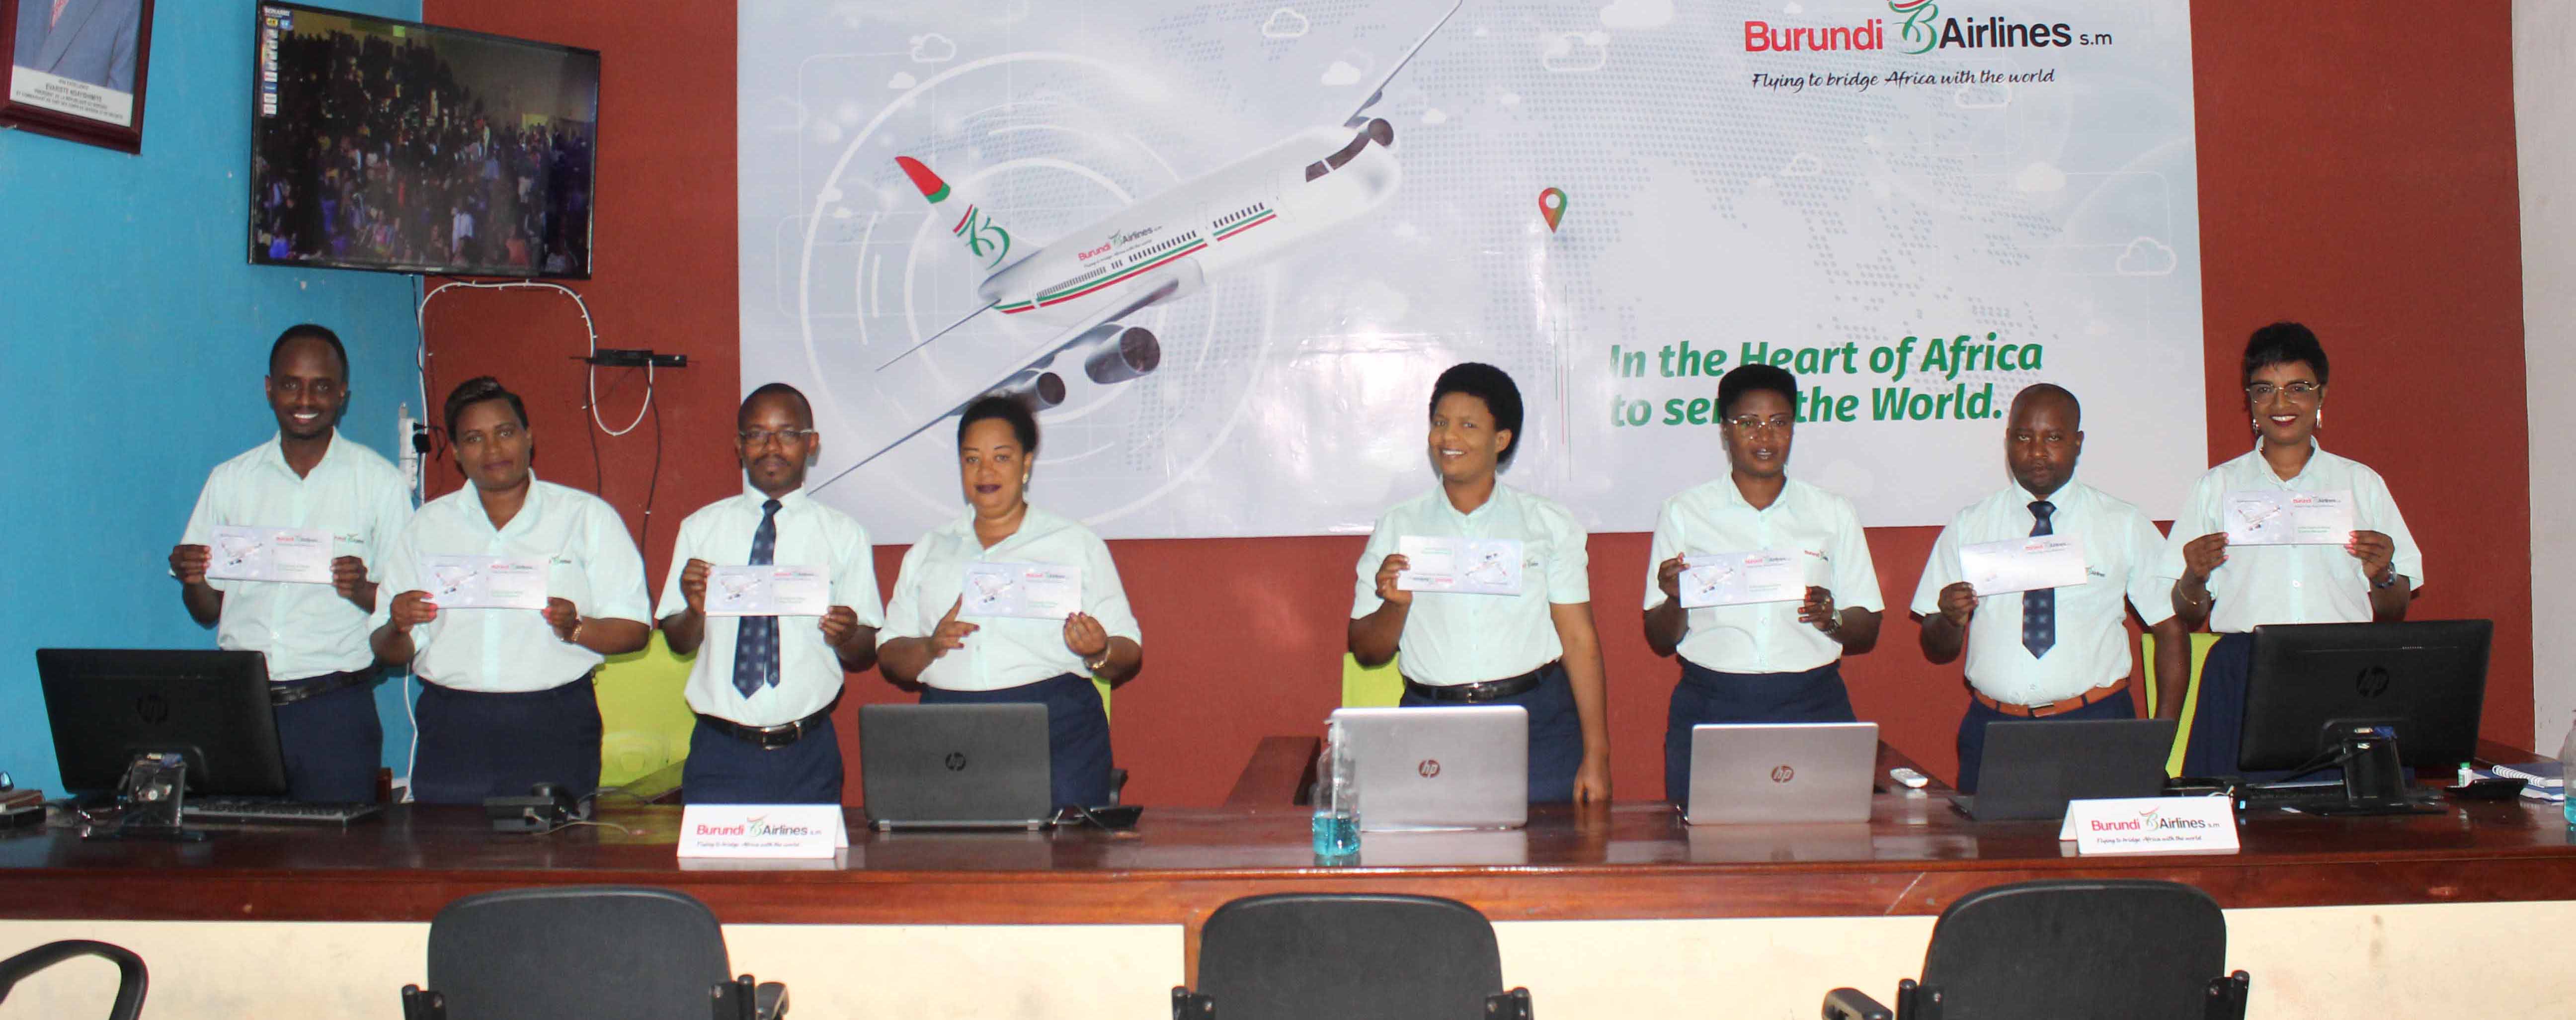 Burundi Airlines